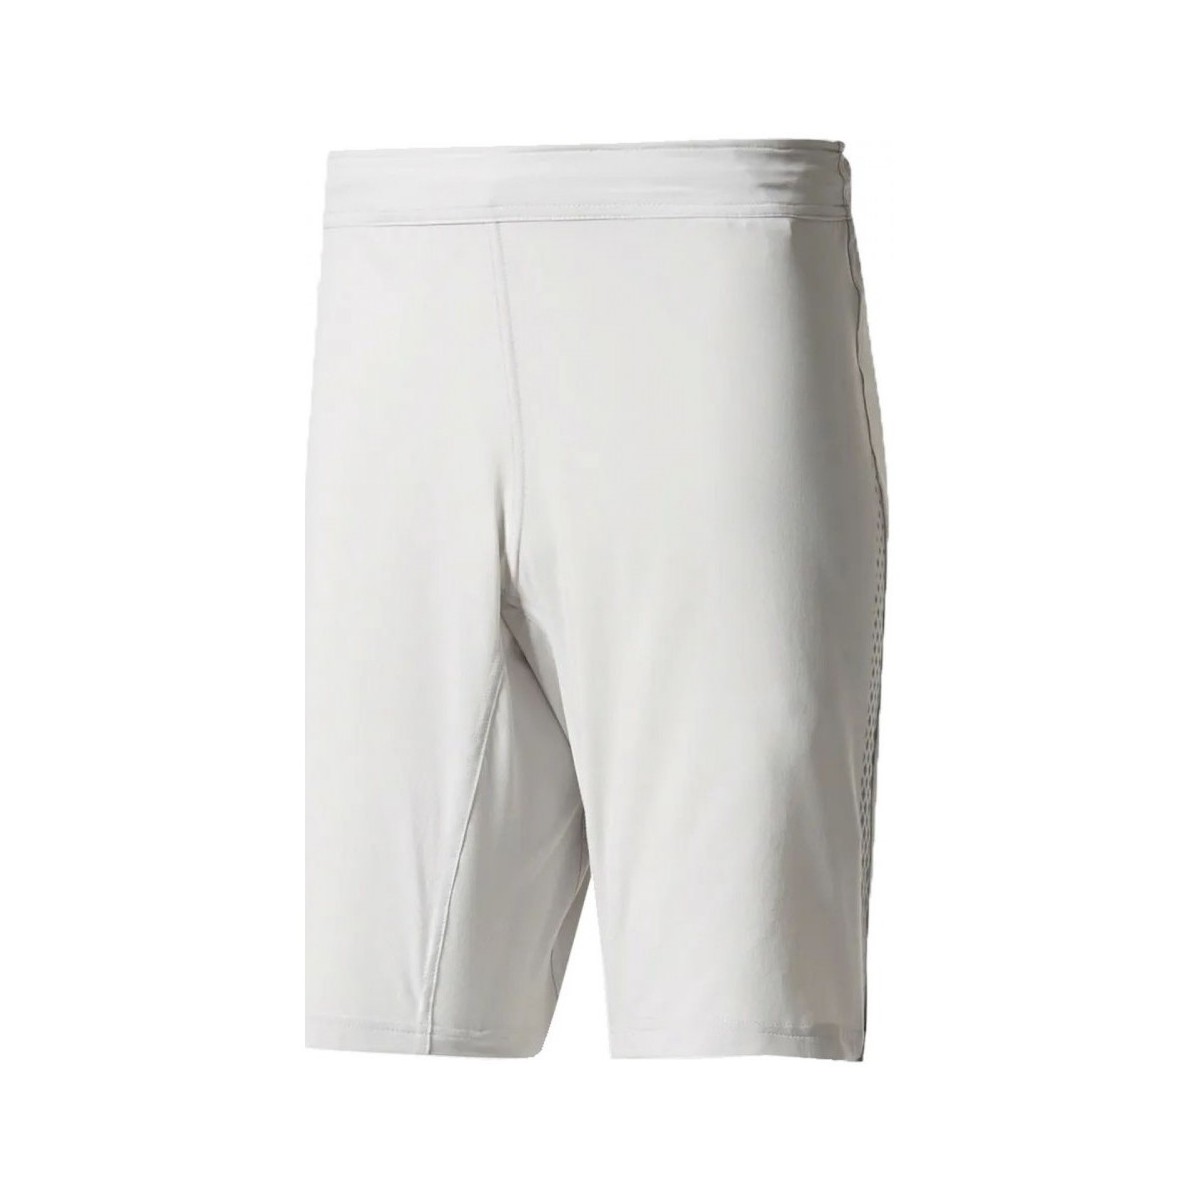 Textiel Heren Korte broeken / Bermuda's adidas Originals Crazytrain Shorts Wit